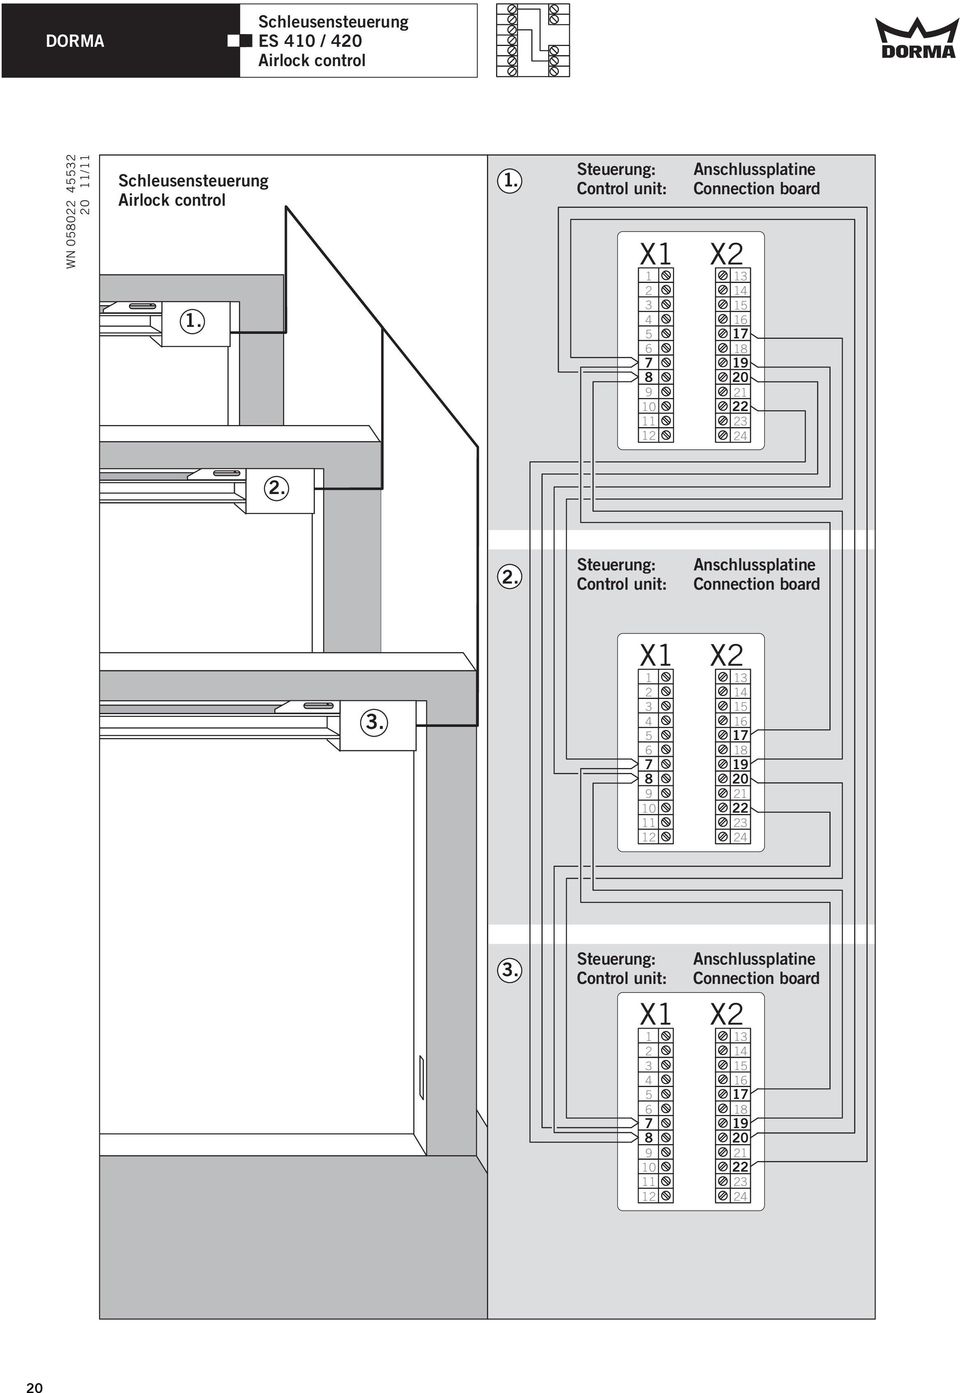 1. Steuerung: Control unit: X1 1 4 5 6 8 9 10 11 1 Anschlussplatine Connection board X 1 14 15 16 1 18 19 0